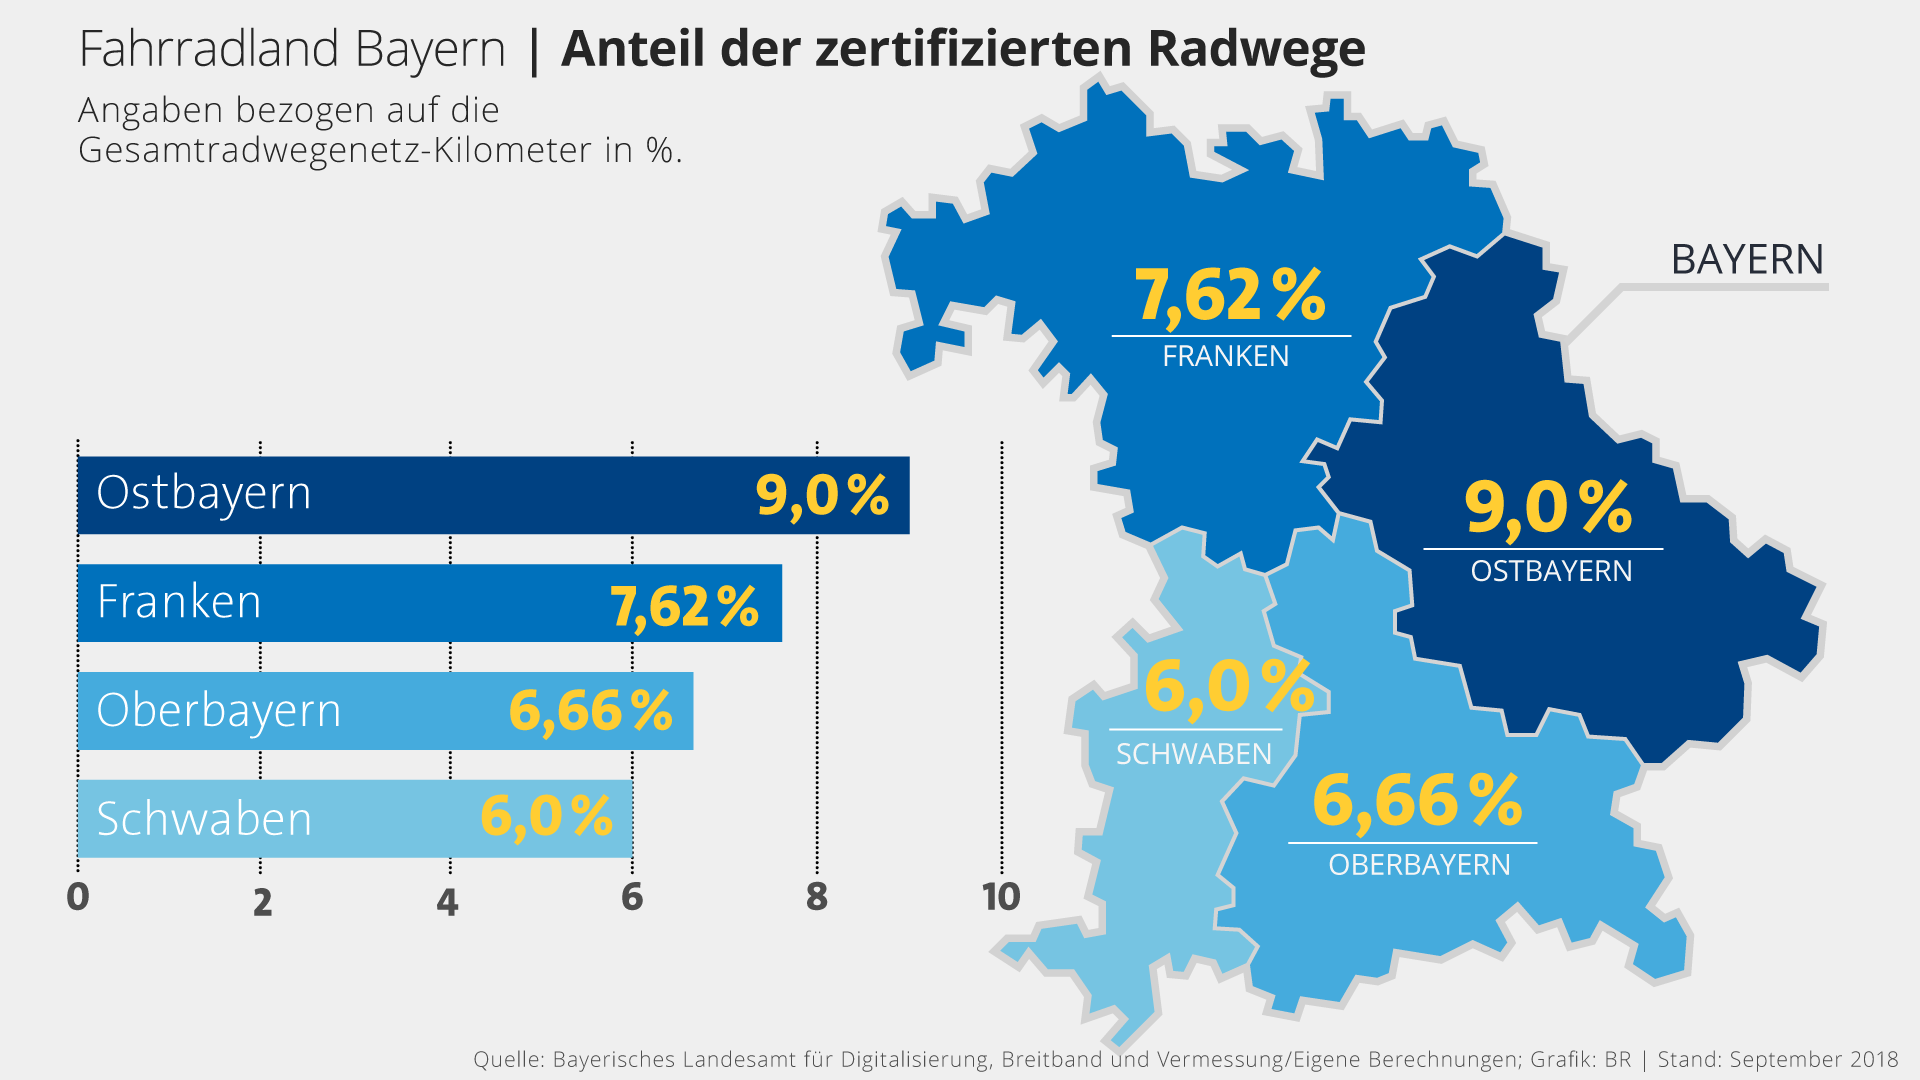 Infografik: Die meisten zertifizierten Radwege hat Ostbayern | Bild: BR